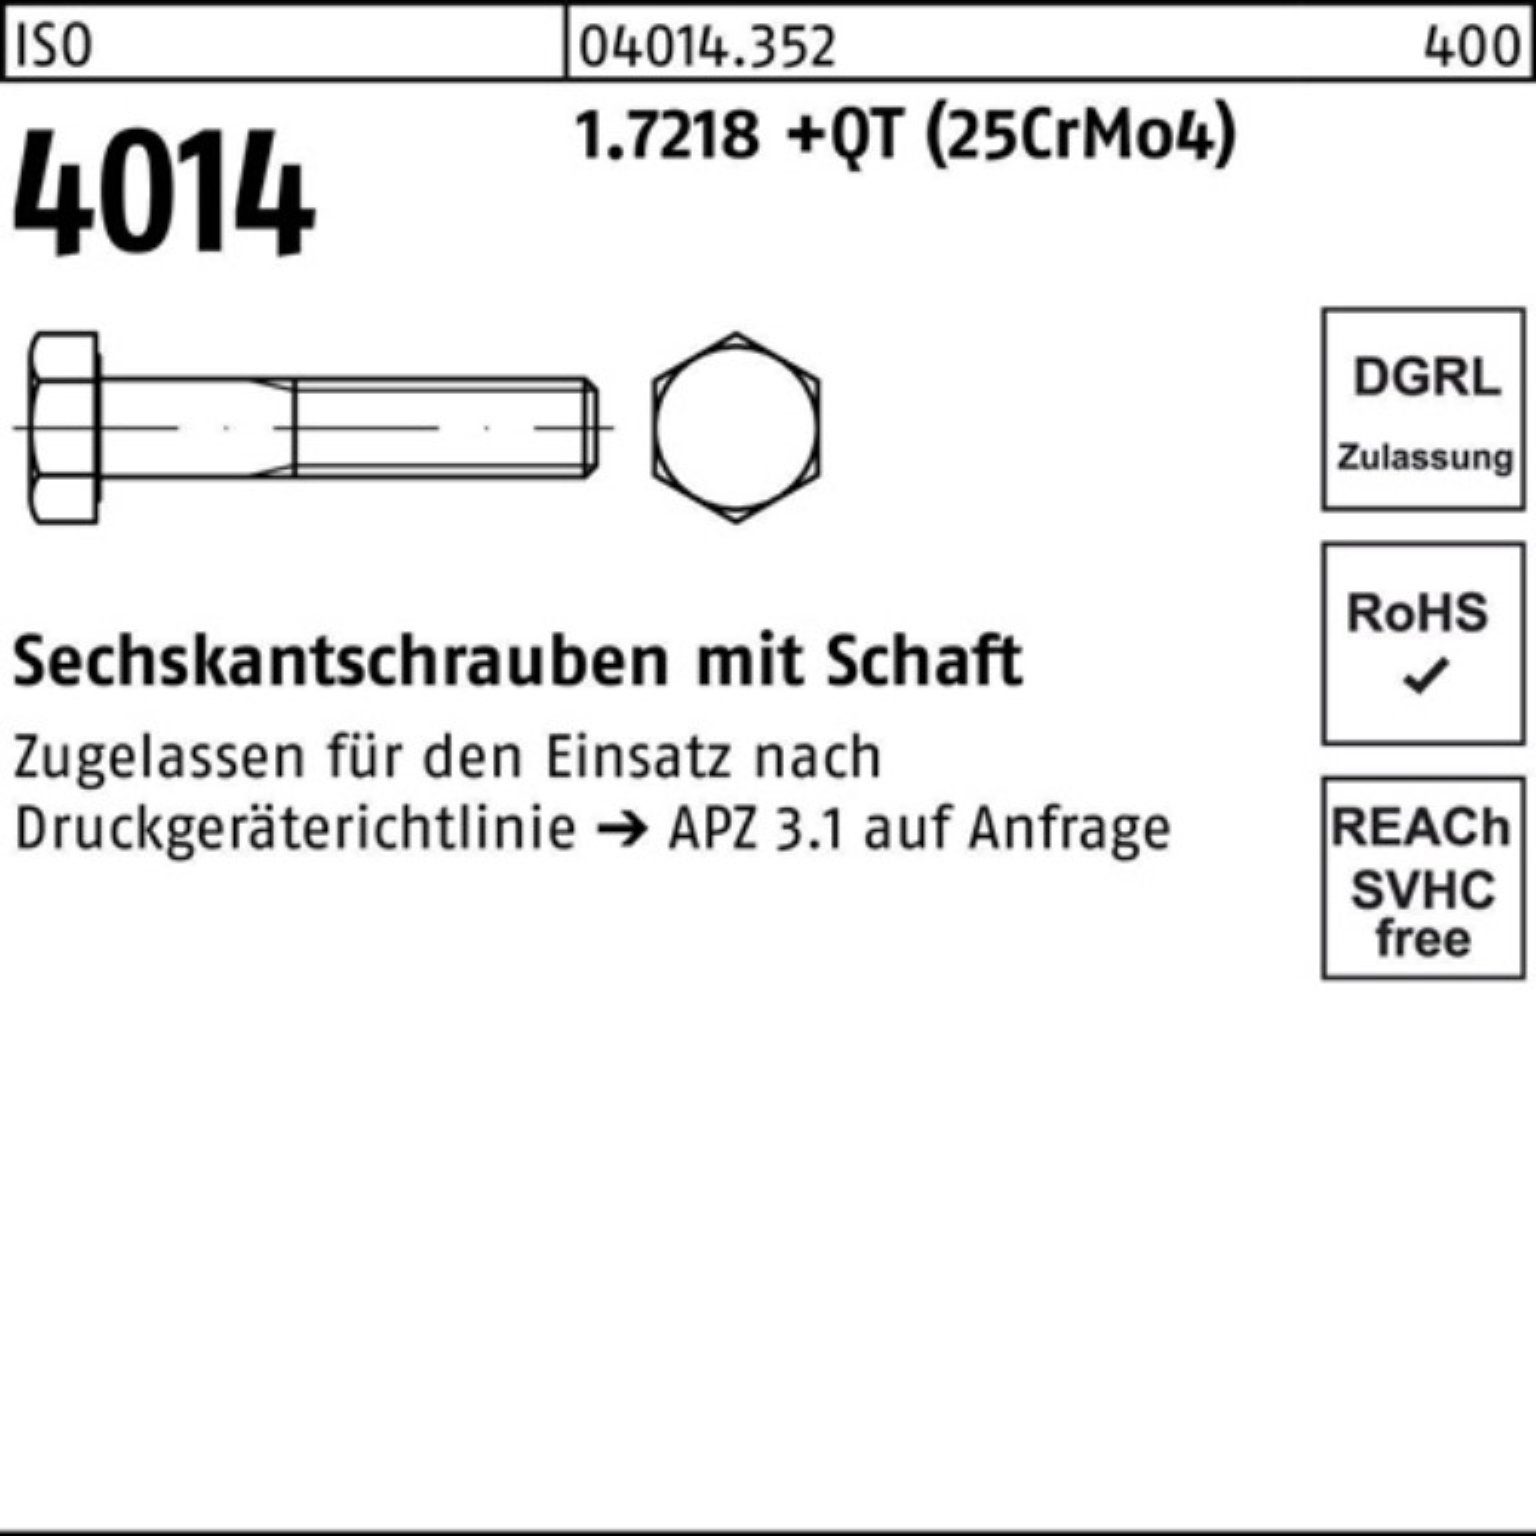 Sechskantschraube Schaft 1.7218 Bufab M36x +QT ISO 100er 200 Sechskantschraube 4014 (25Cr Pack